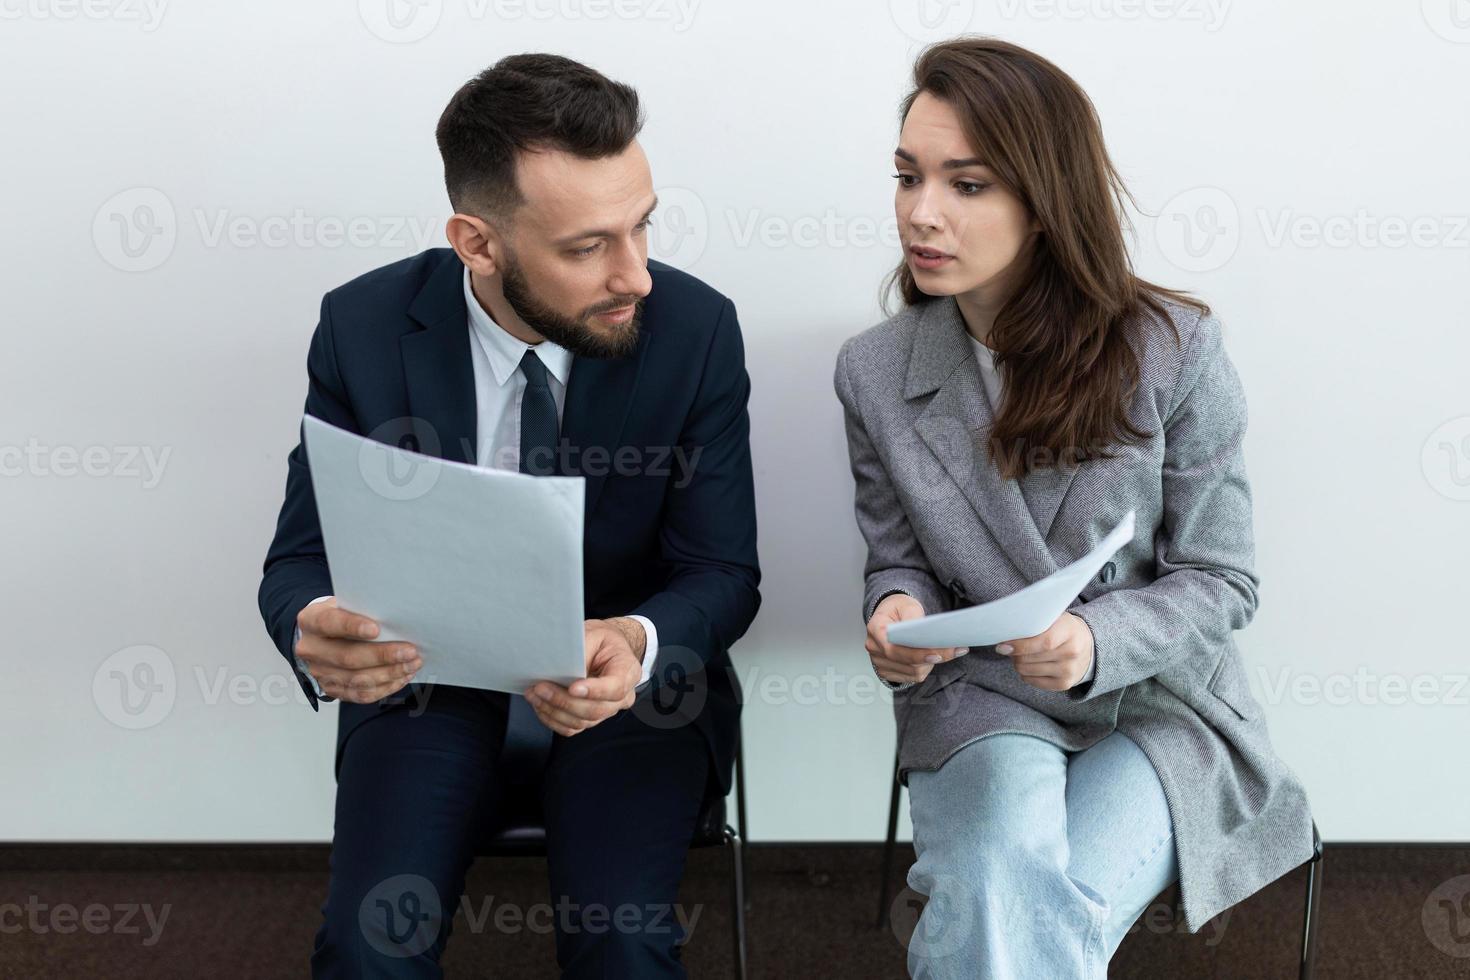 candidatos a emprego se comunicam antes da entrevista com o gerente, conceito de busca de emprego foto